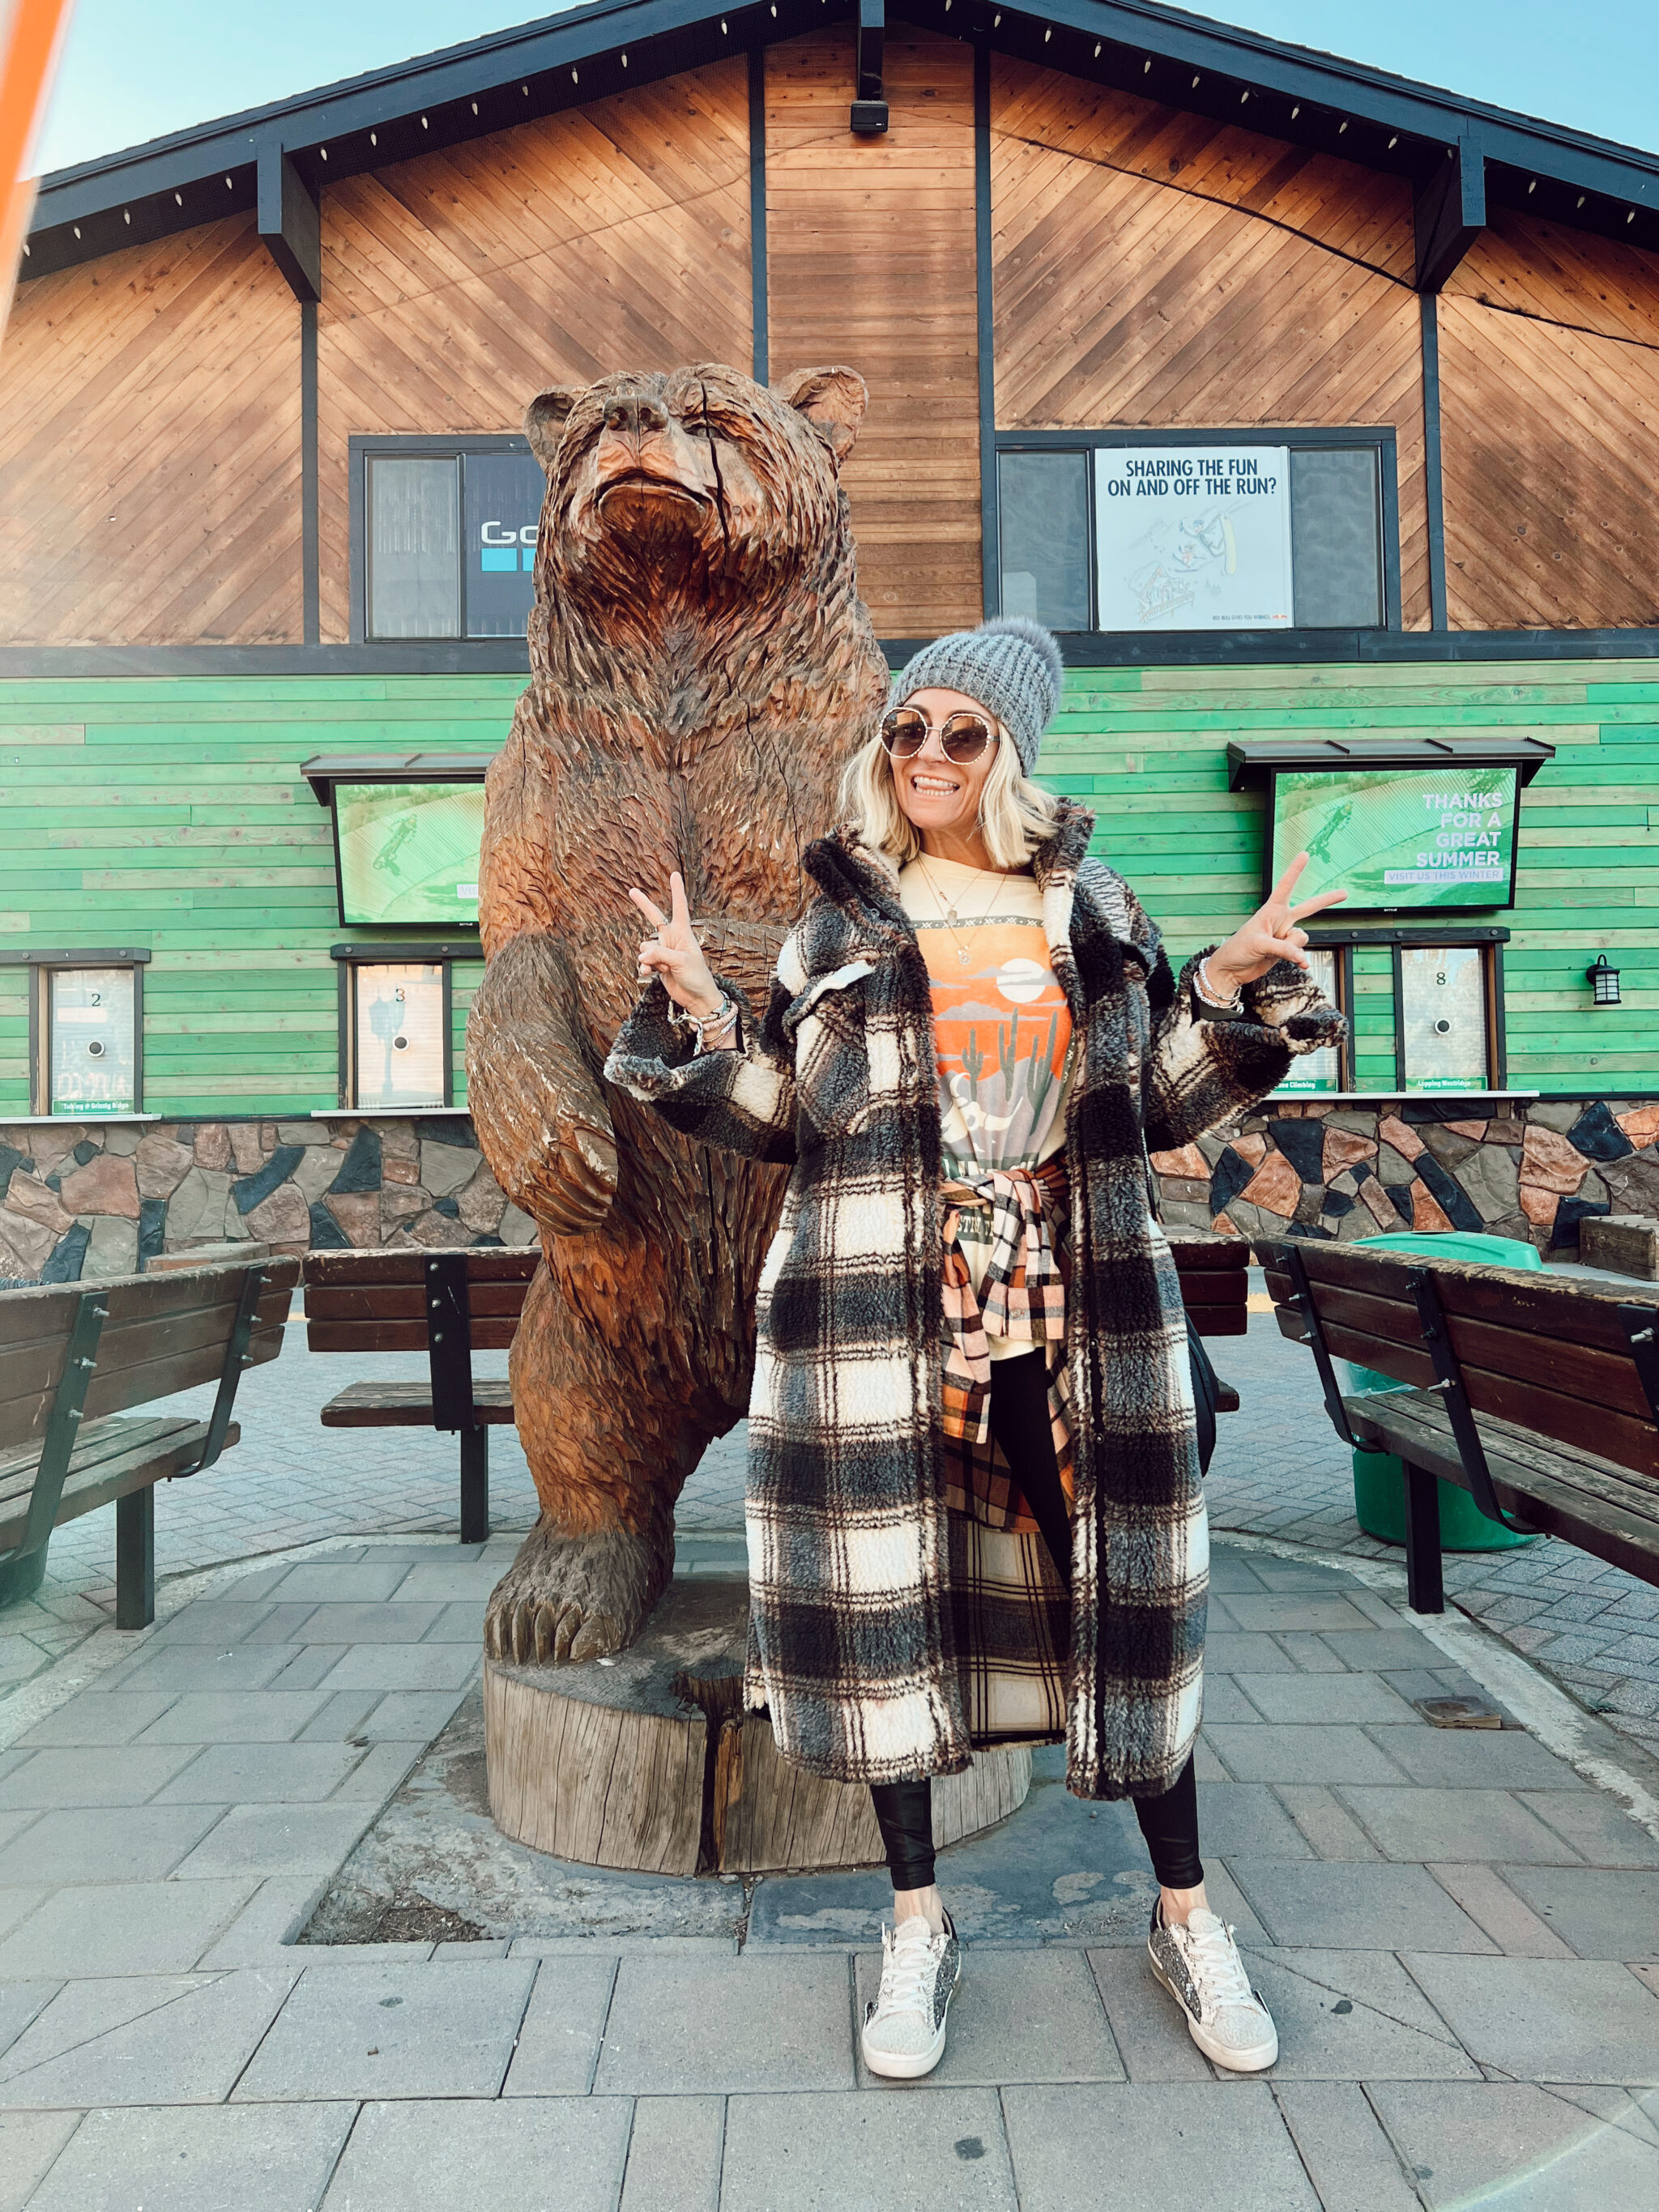 woman by big wooden bear sculpture